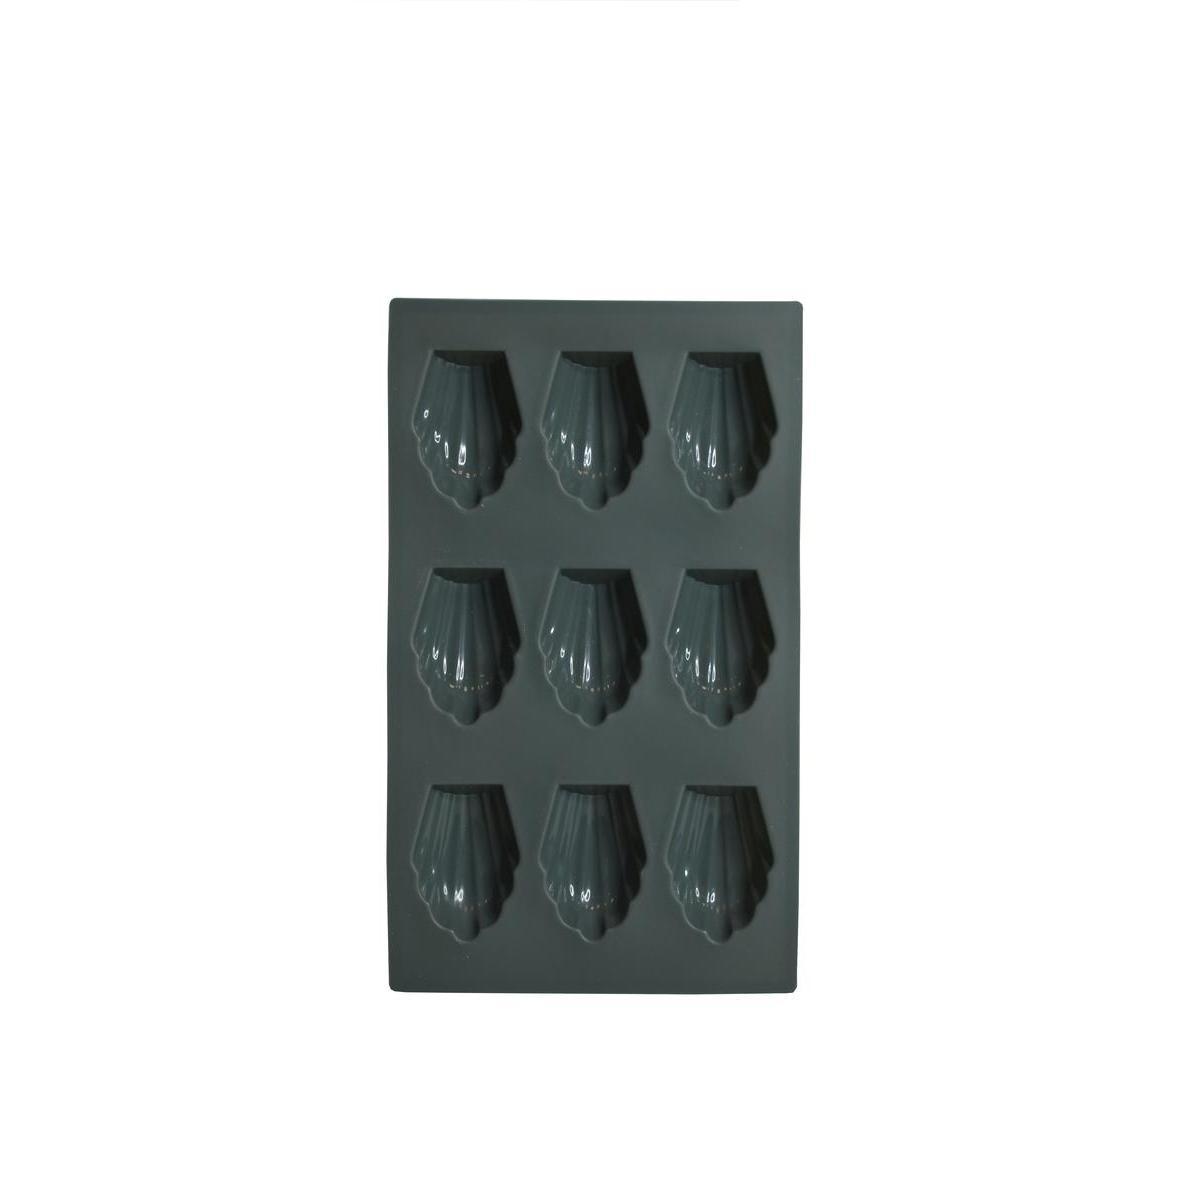 Plaque pour 9 madeleines en silicone - L 29 x H 1.6 x l 17 cm - Différents coloris - Rouge ou gris